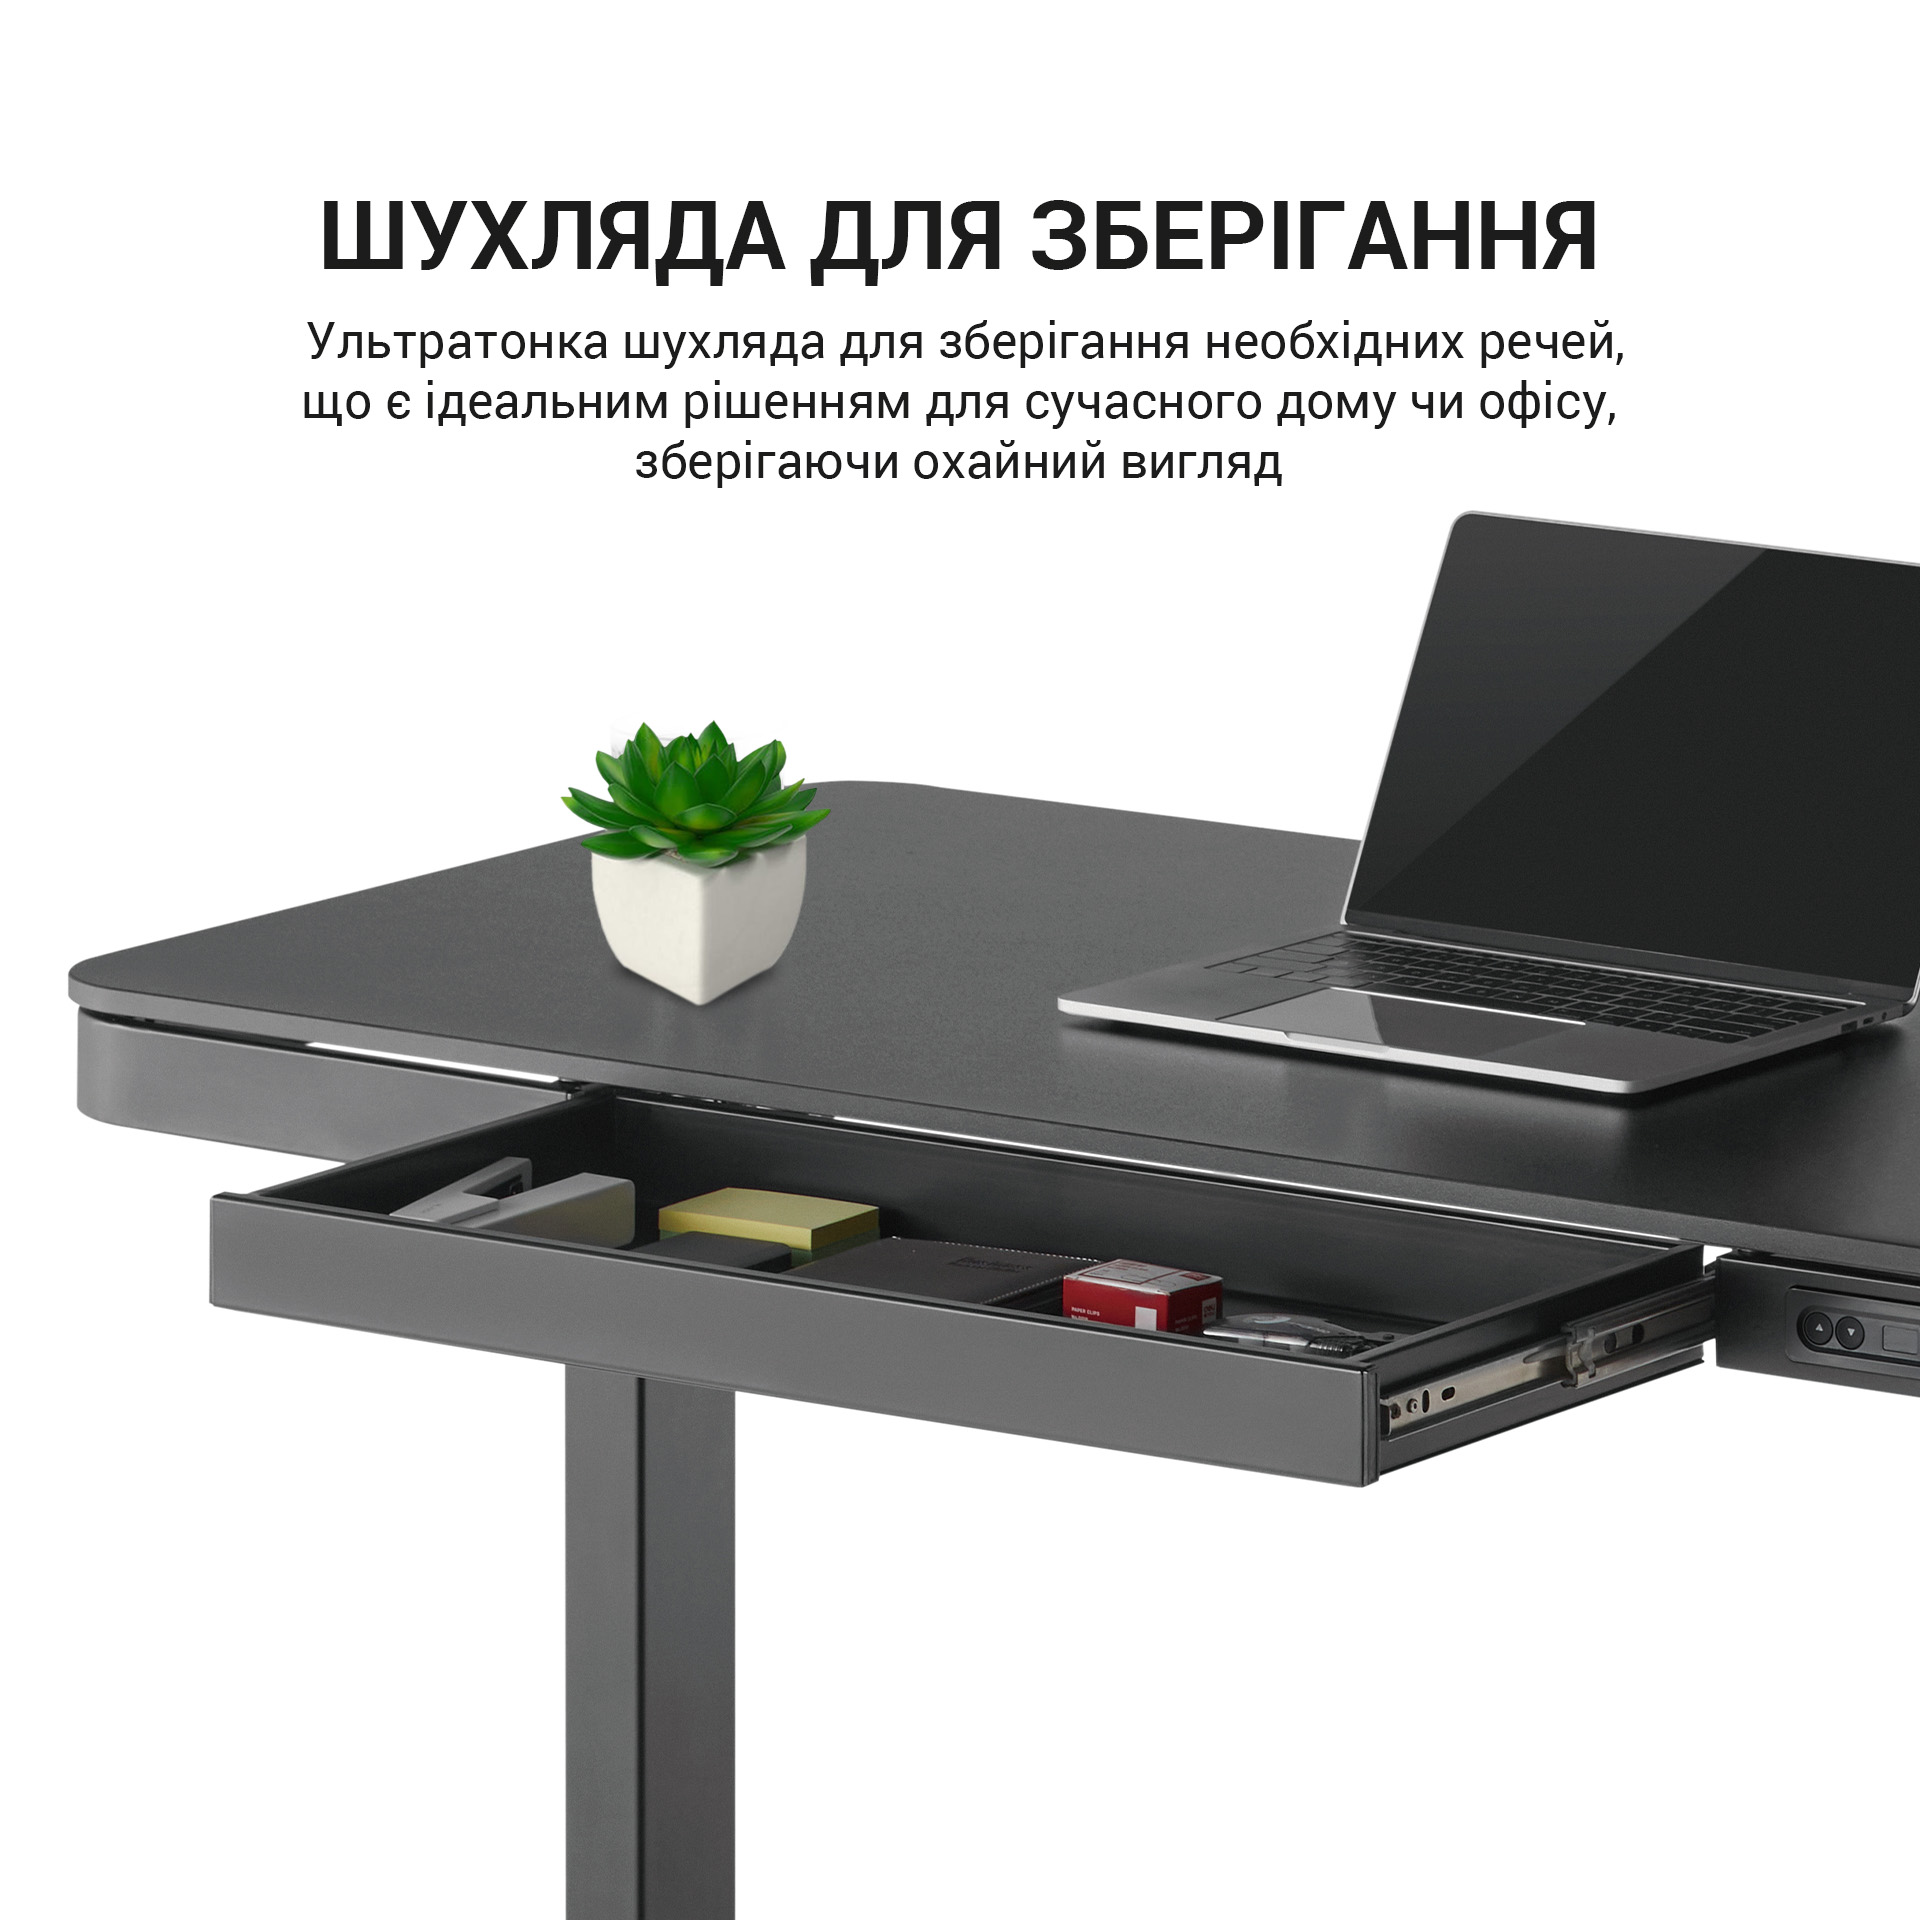 Комп'ютерний стіл OfficePro з електрорегулюванням висоти чорний (ODE111B) - фото 10